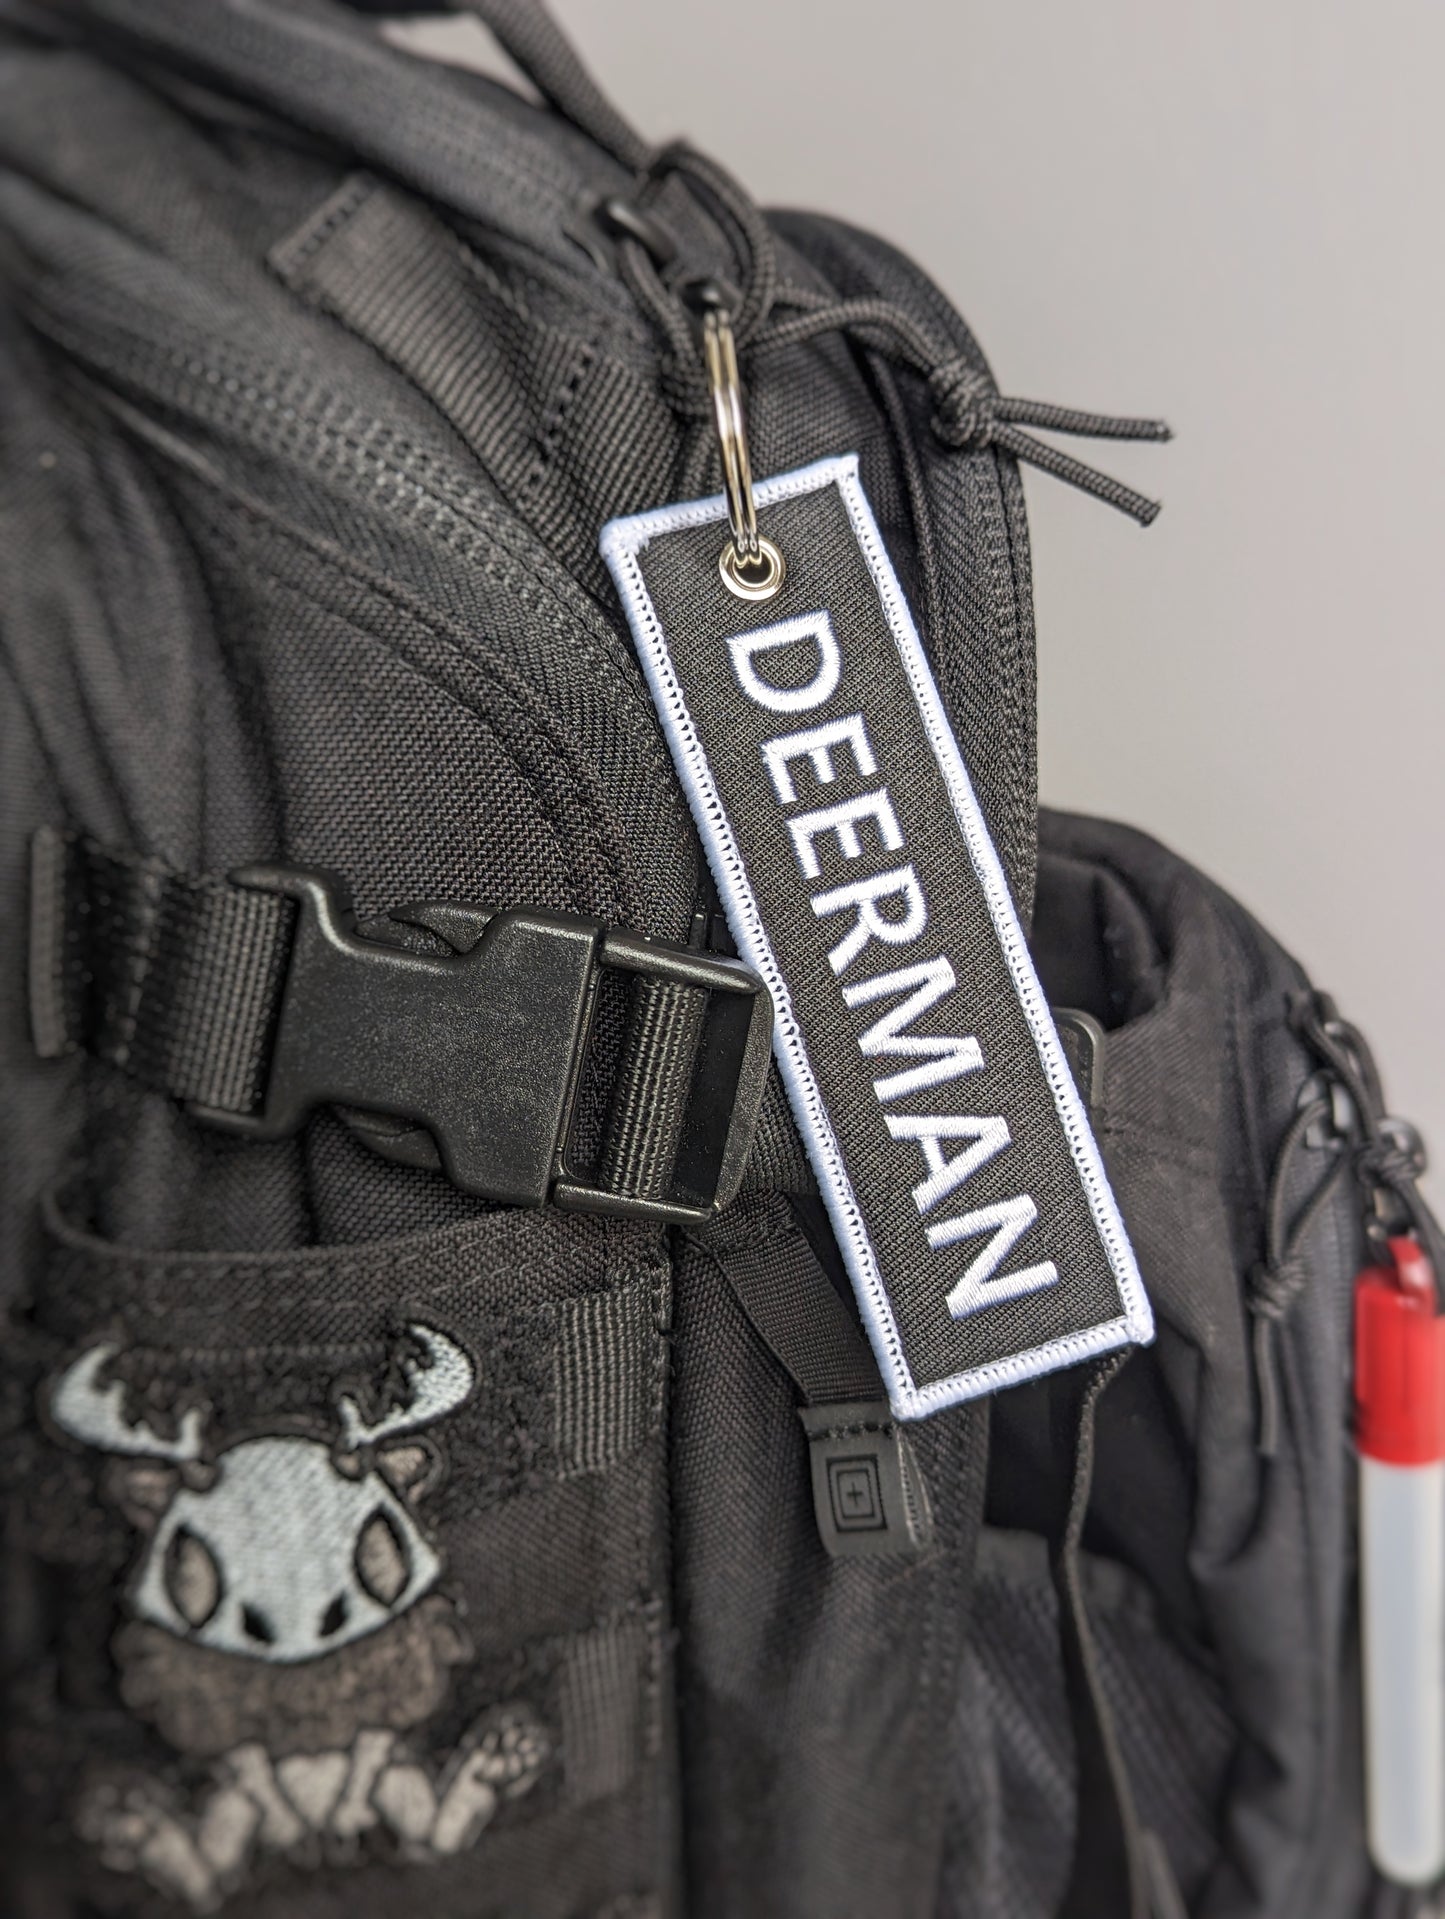 Deerman jet tag keychain